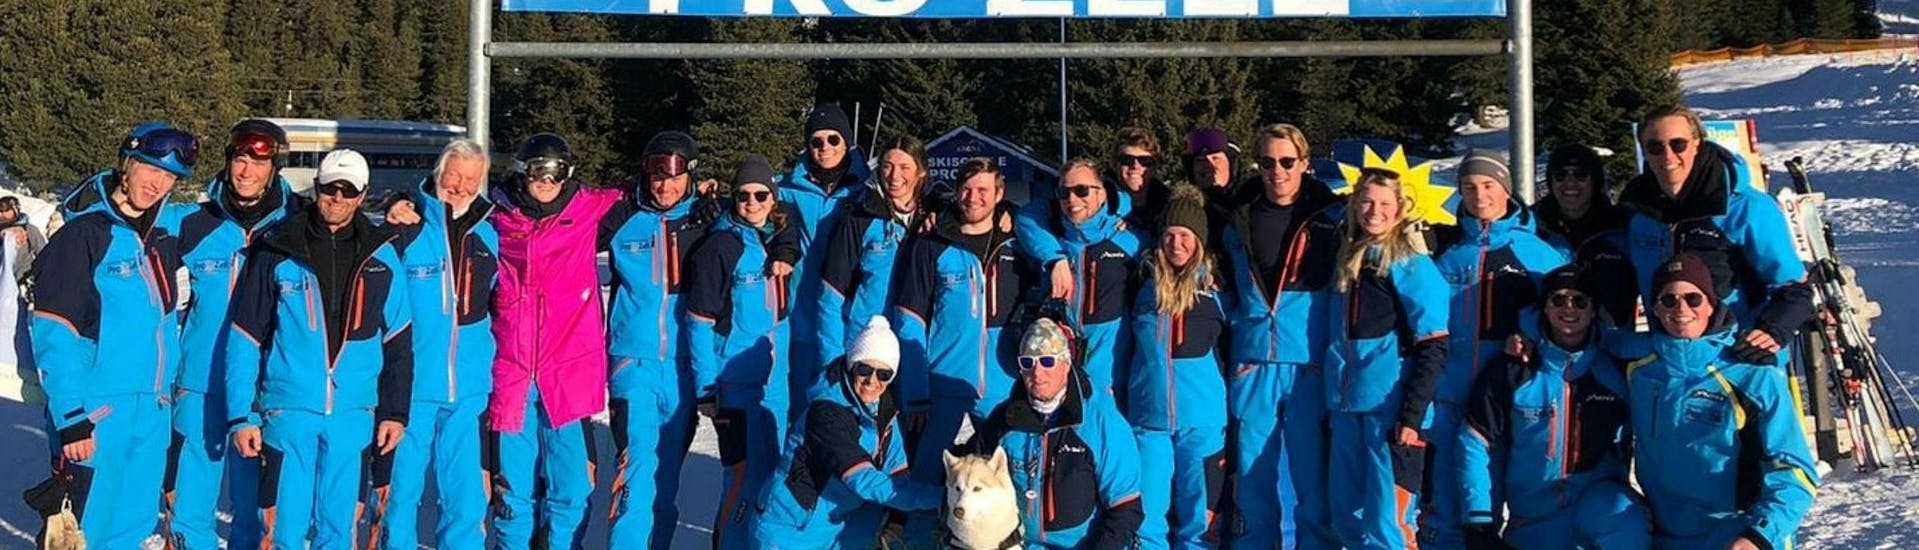 De skileraren van de skischool Skischule Pro Zell in Zell am Ziller poseren samen voor een groepsfoto om hun Skilessen voor Volwassenen - Beginners te promoten.